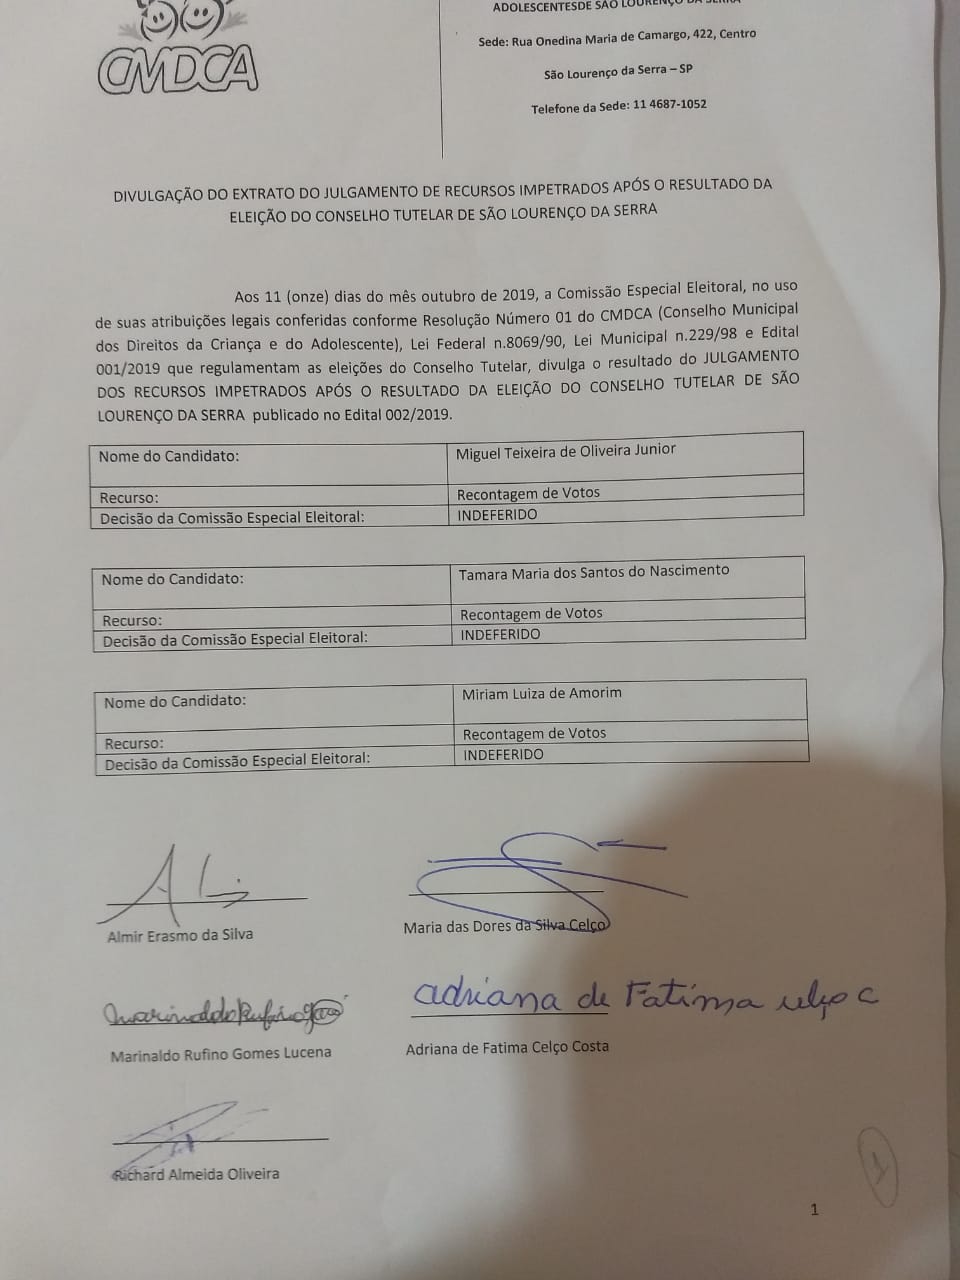 Eleição do Conselho Tutelar - Divulgação do Extrato do Julgamento de Recursos impetrados após o resultado da eleição do Conselho Tutelar de São Lourenço da Serra